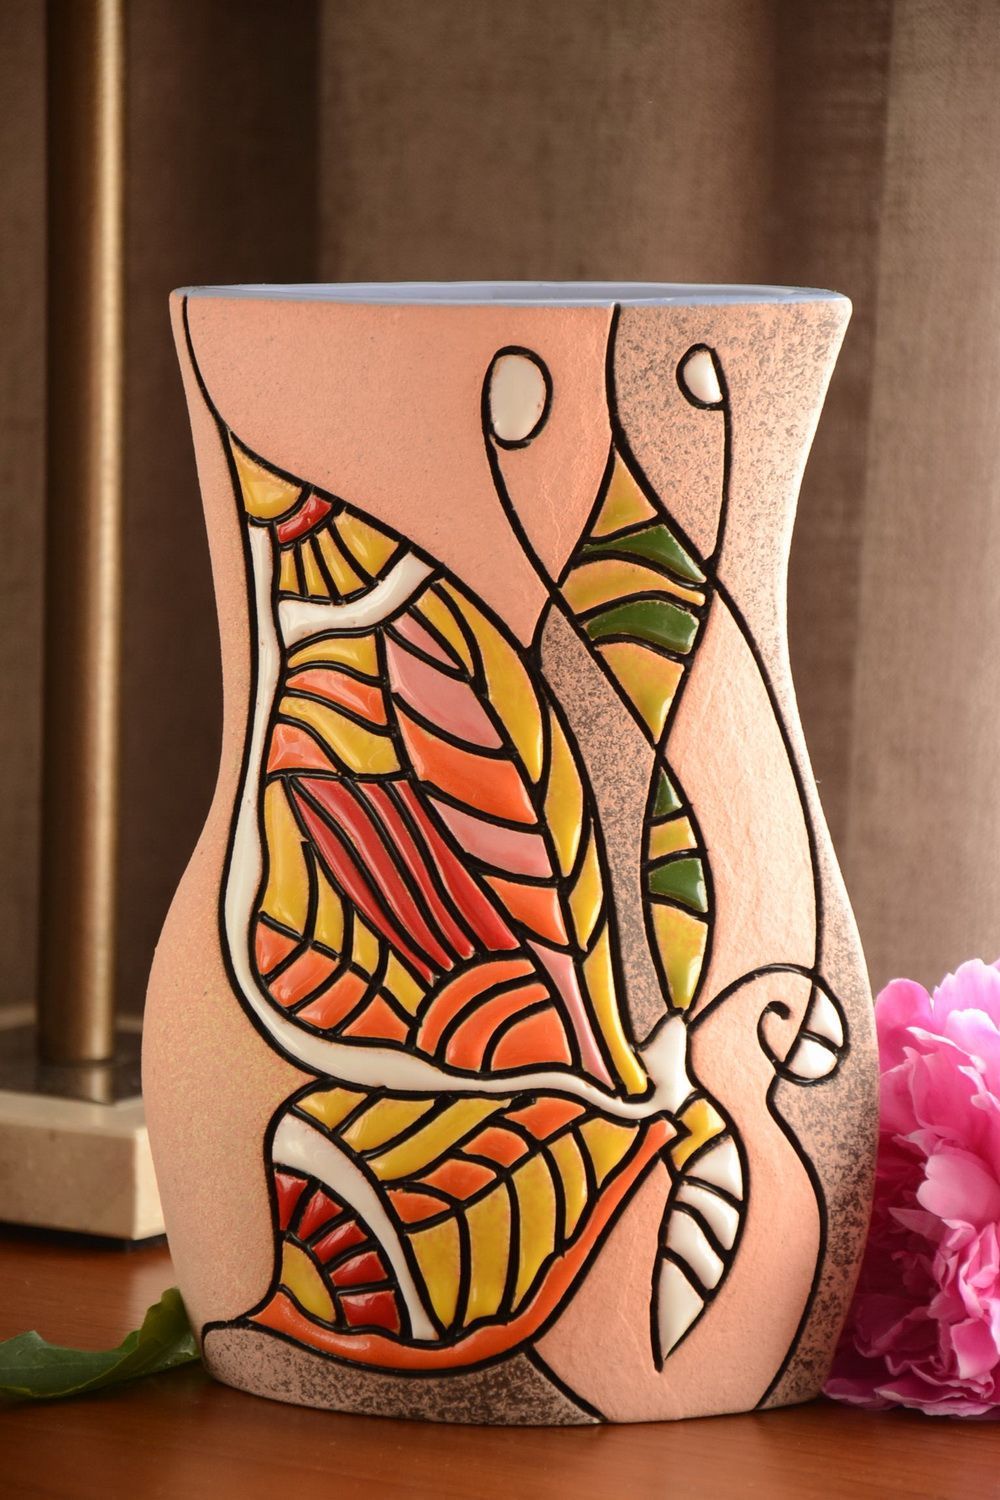 Полуфарфоровая ваза для цветов расписанная пигментами хэнд мэйд на 2 л Бабочка фото 1